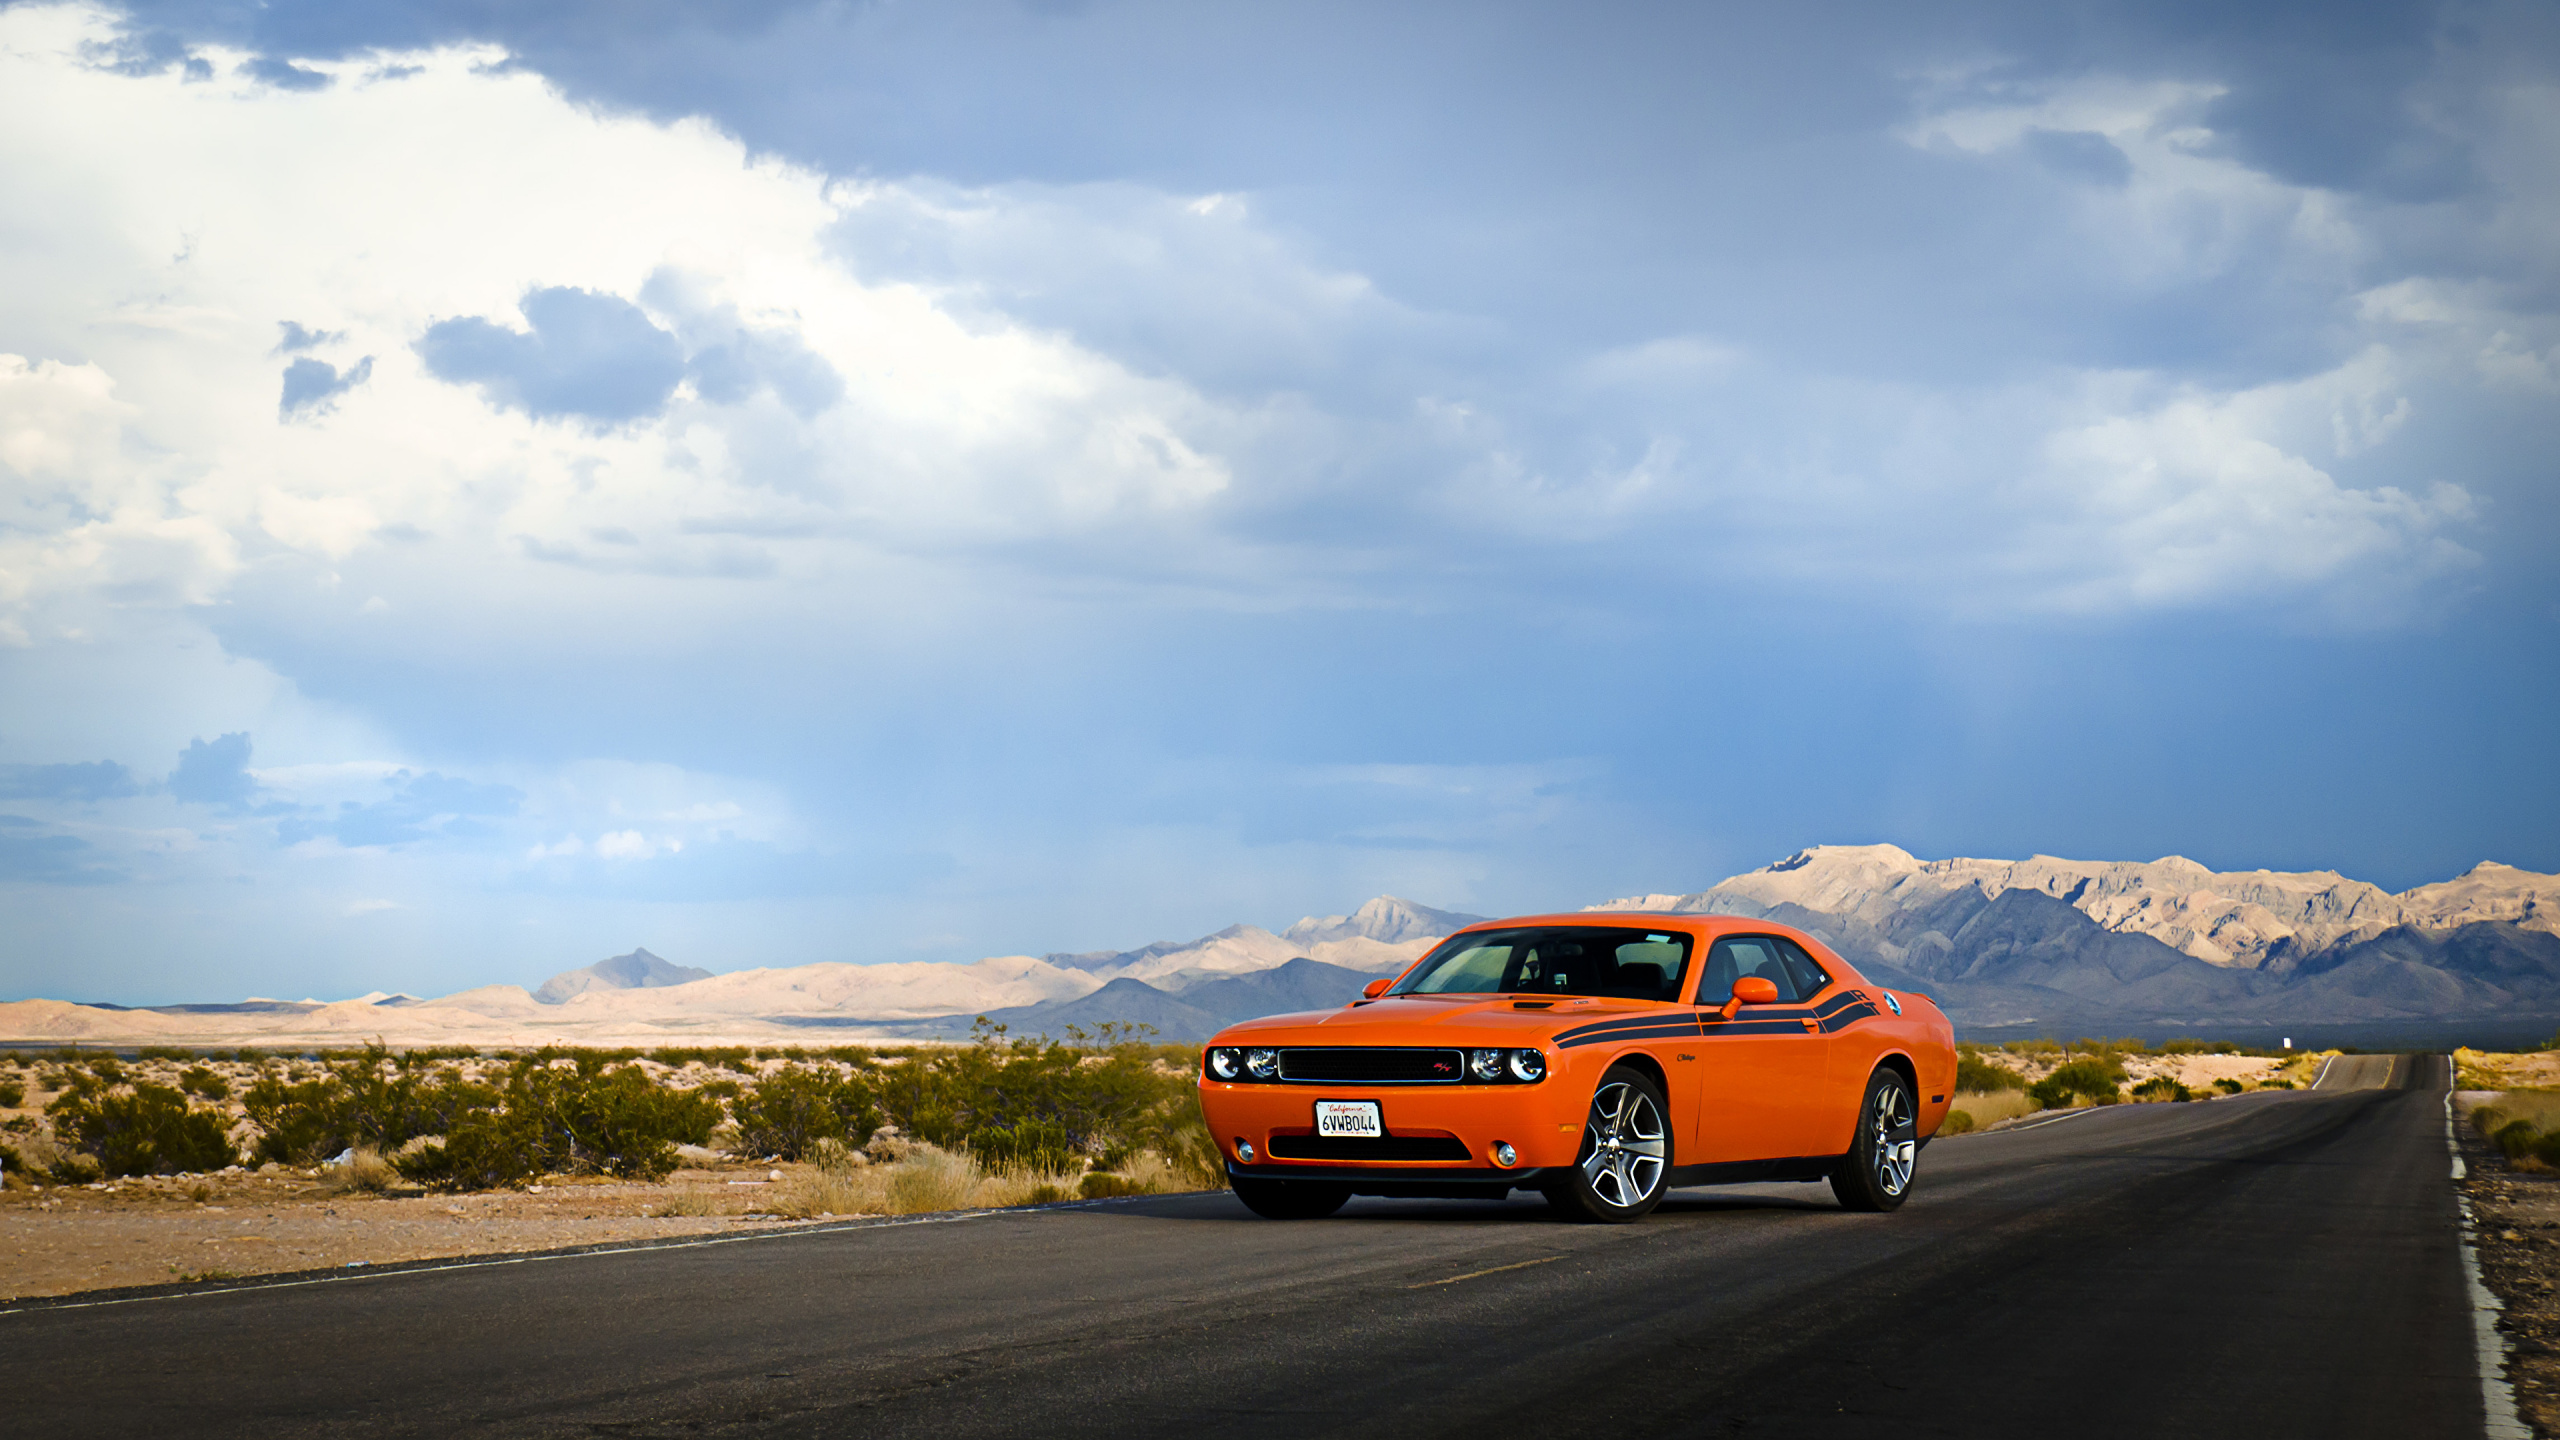 Chevrolet Camaro Orange Sur Route Pendant la Journée. Wallpaper in 2560x1440 Resolution